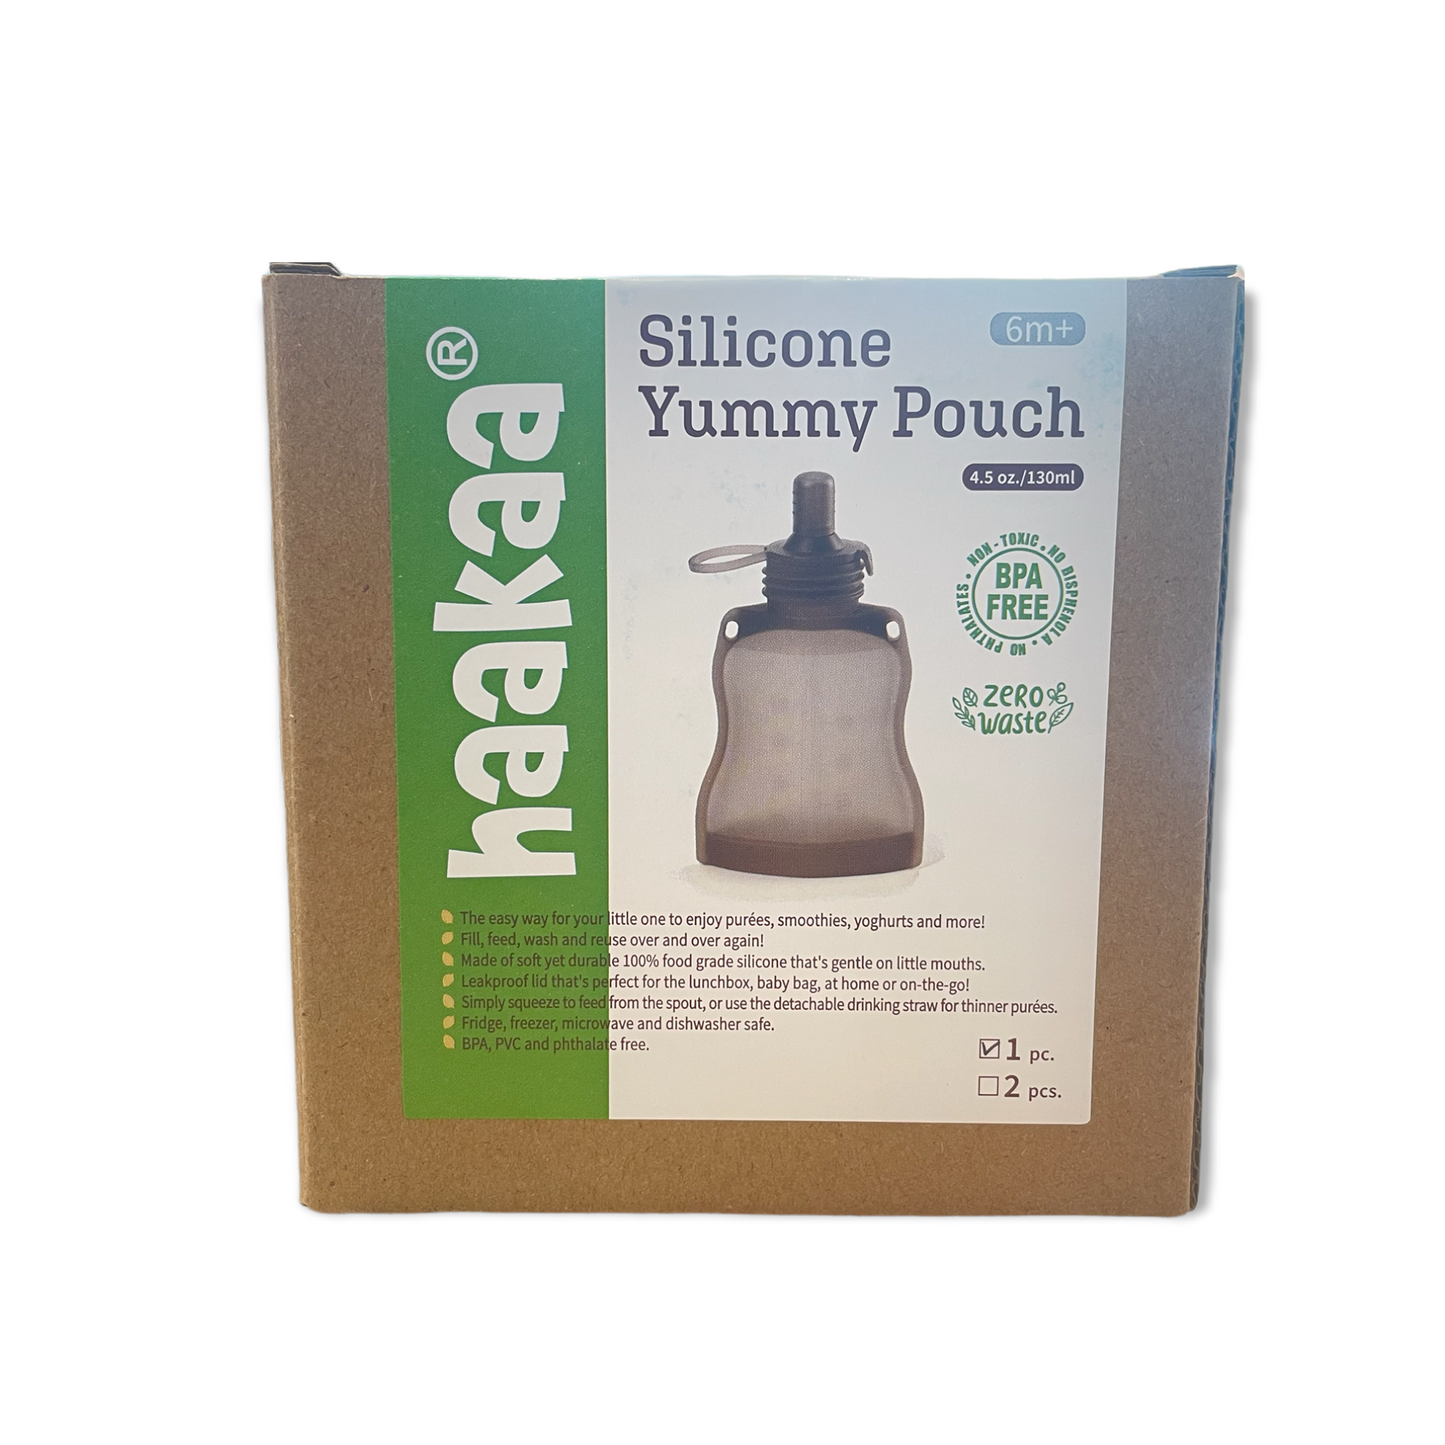 Silicone Yummy Pouch 4.5 oz